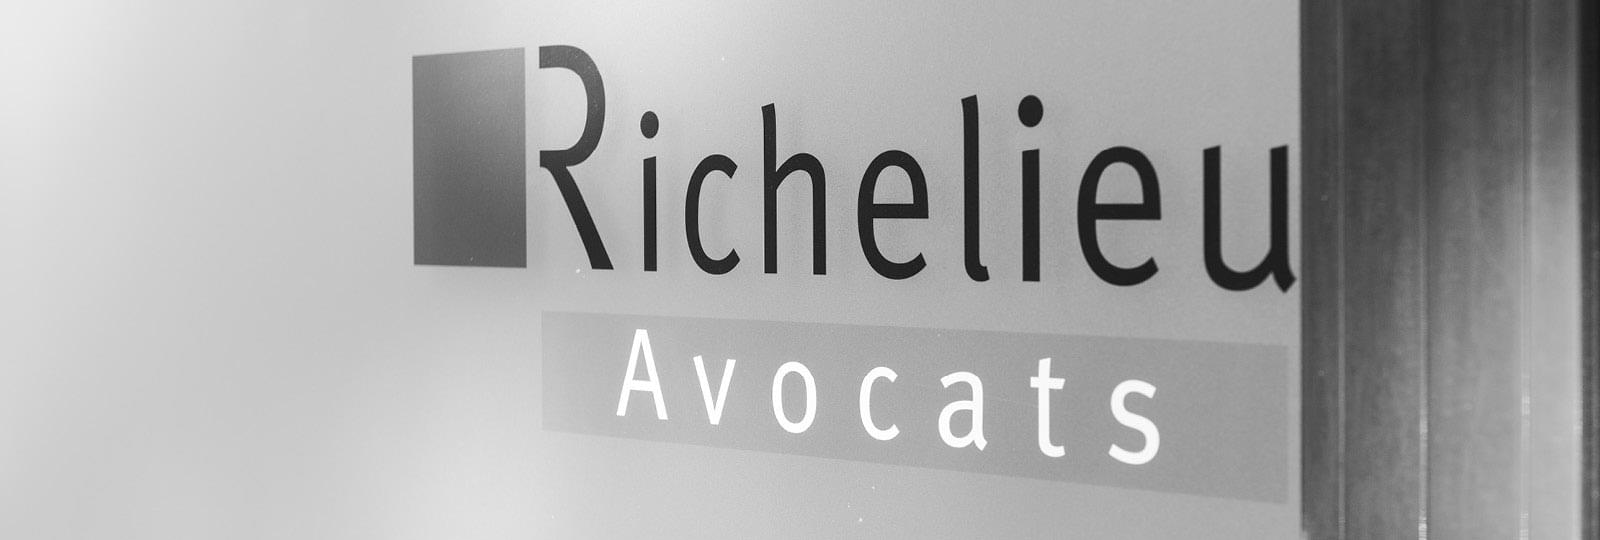 Mur avec logo de Richelieu Avocats